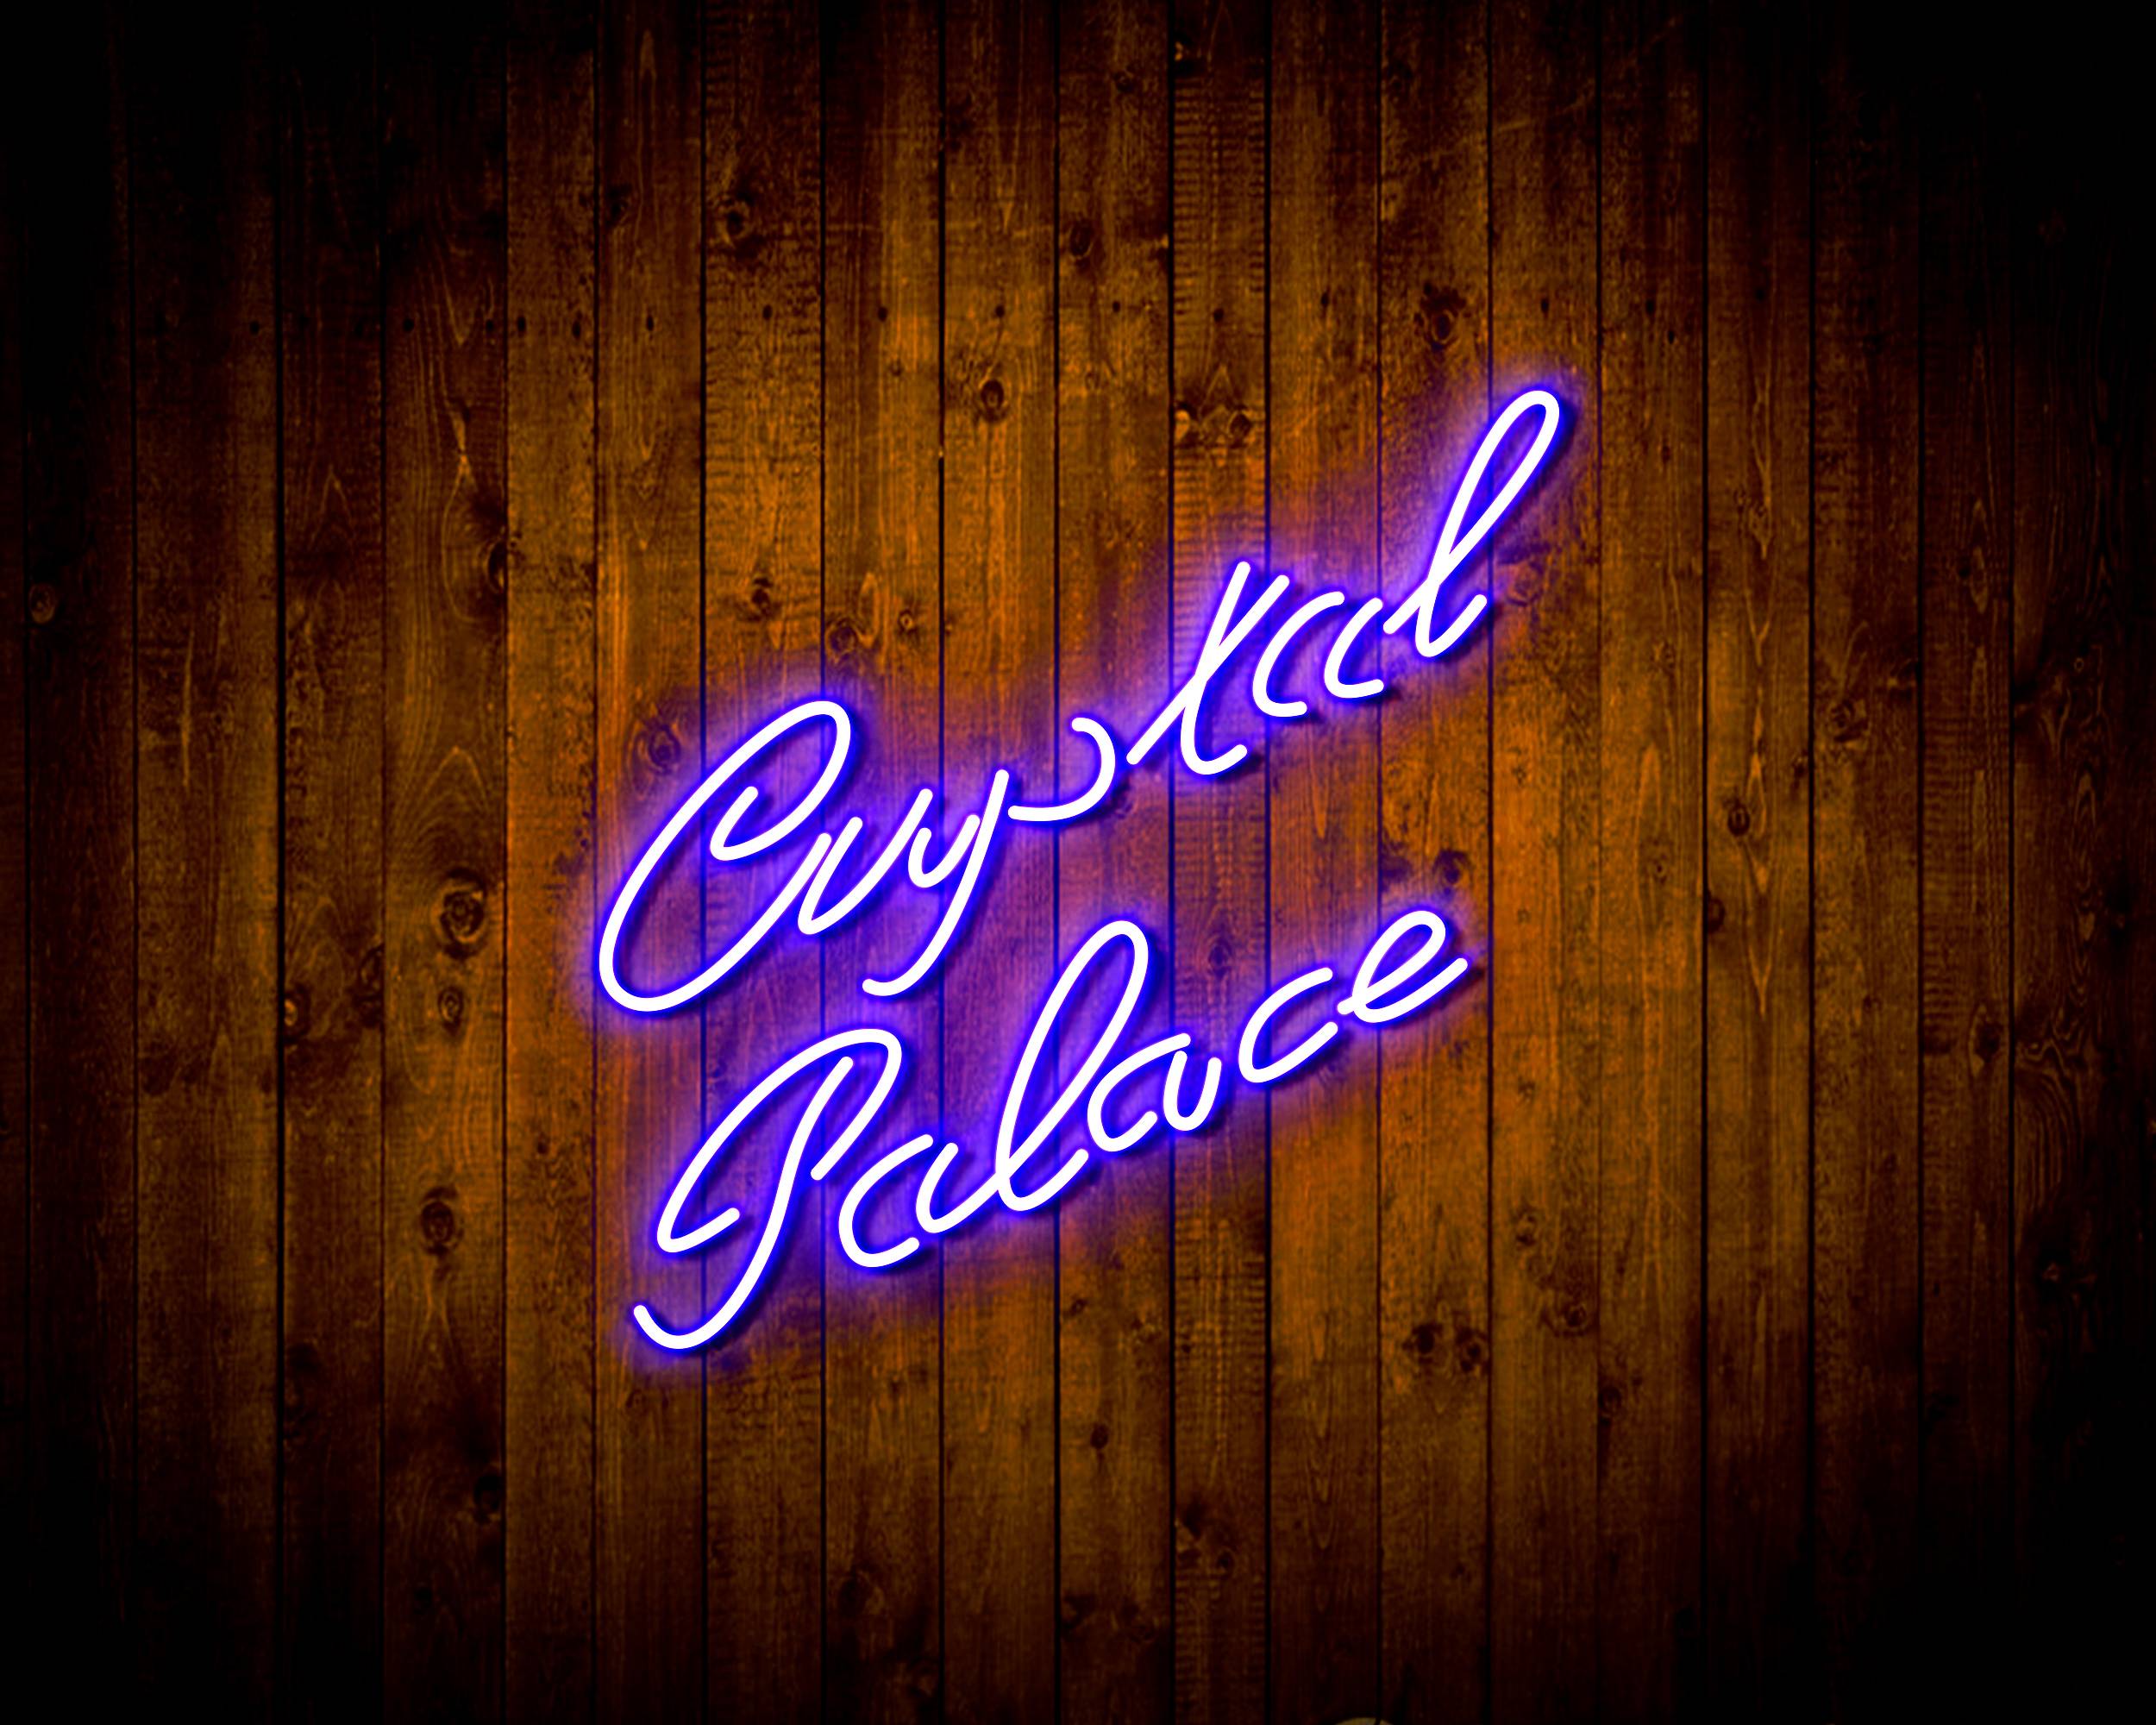 Premier League Crystal Palace Football Club Handmade LED Neon Light Sign